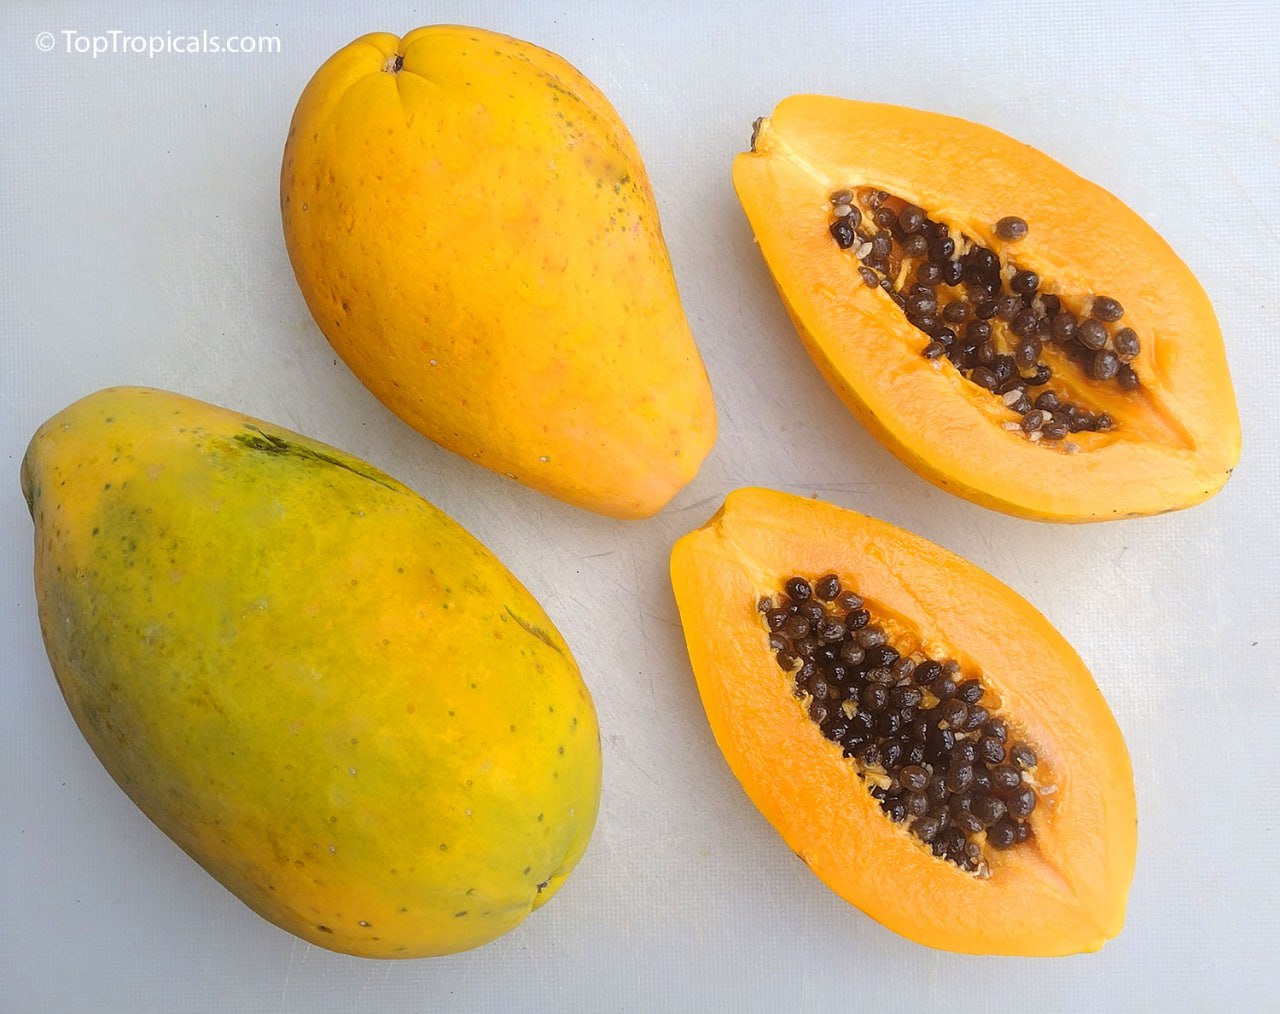 Top 3 most wanted Papaya varieties